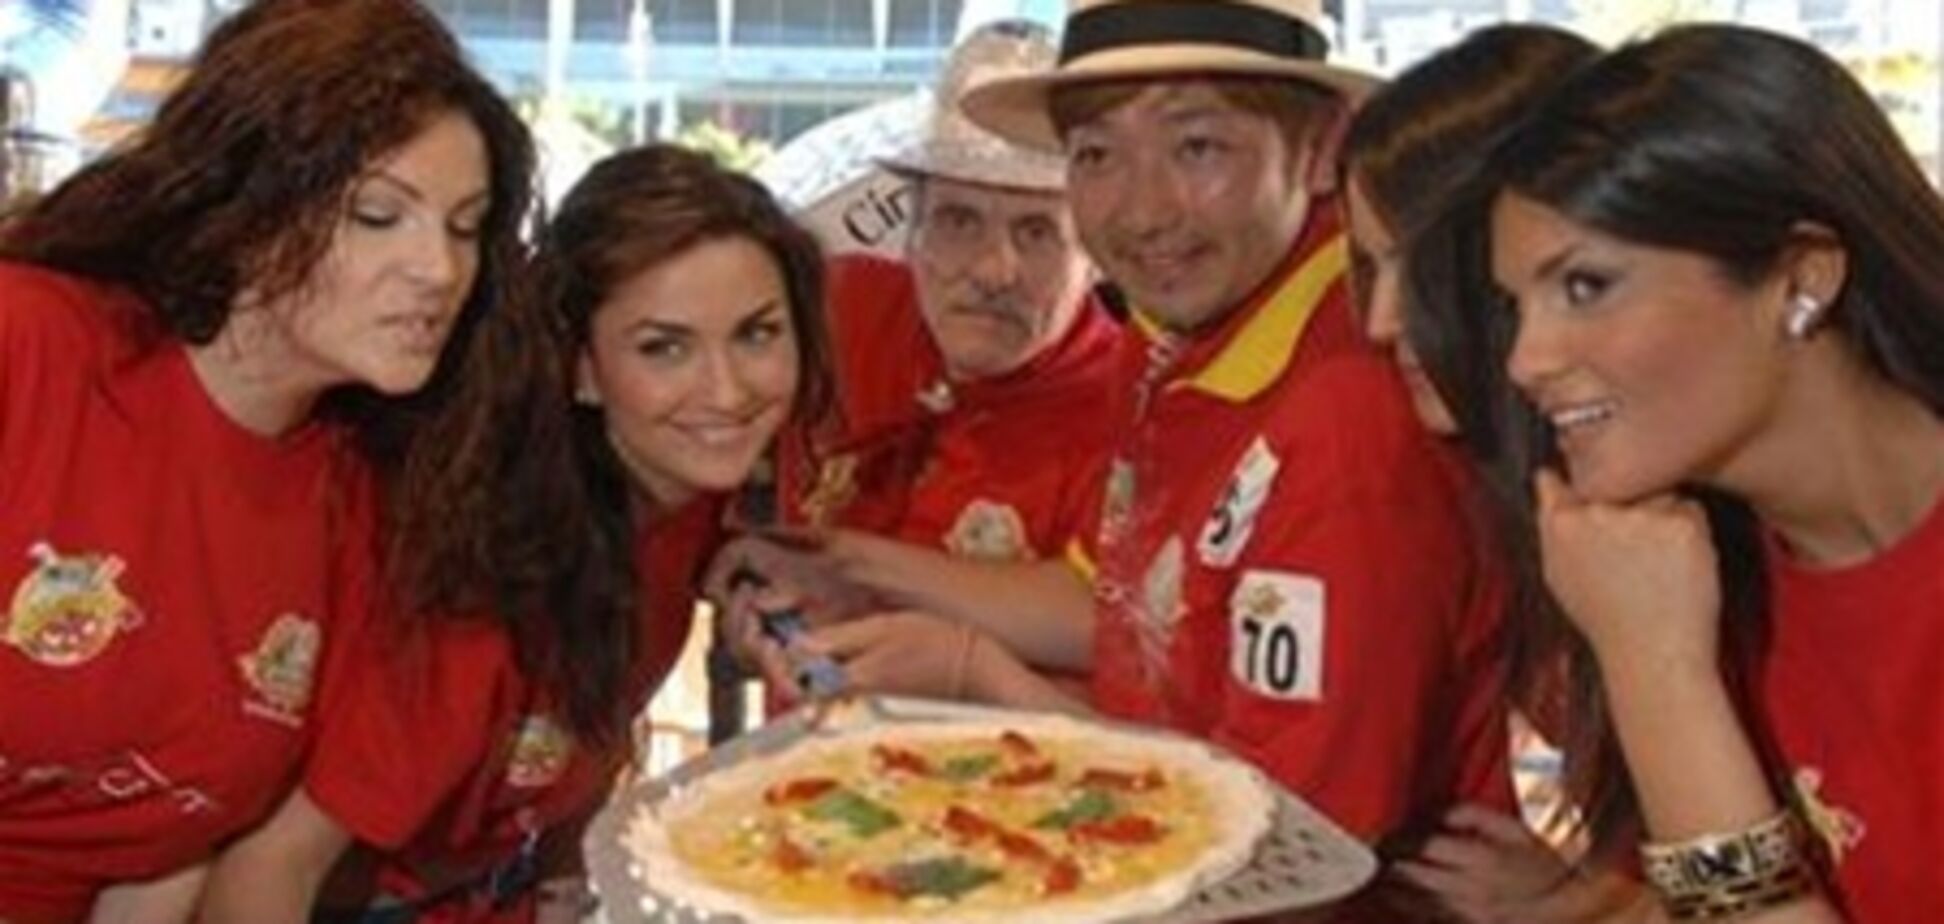 Чемпионат по приготовлению пиццы проходит в Неаполе